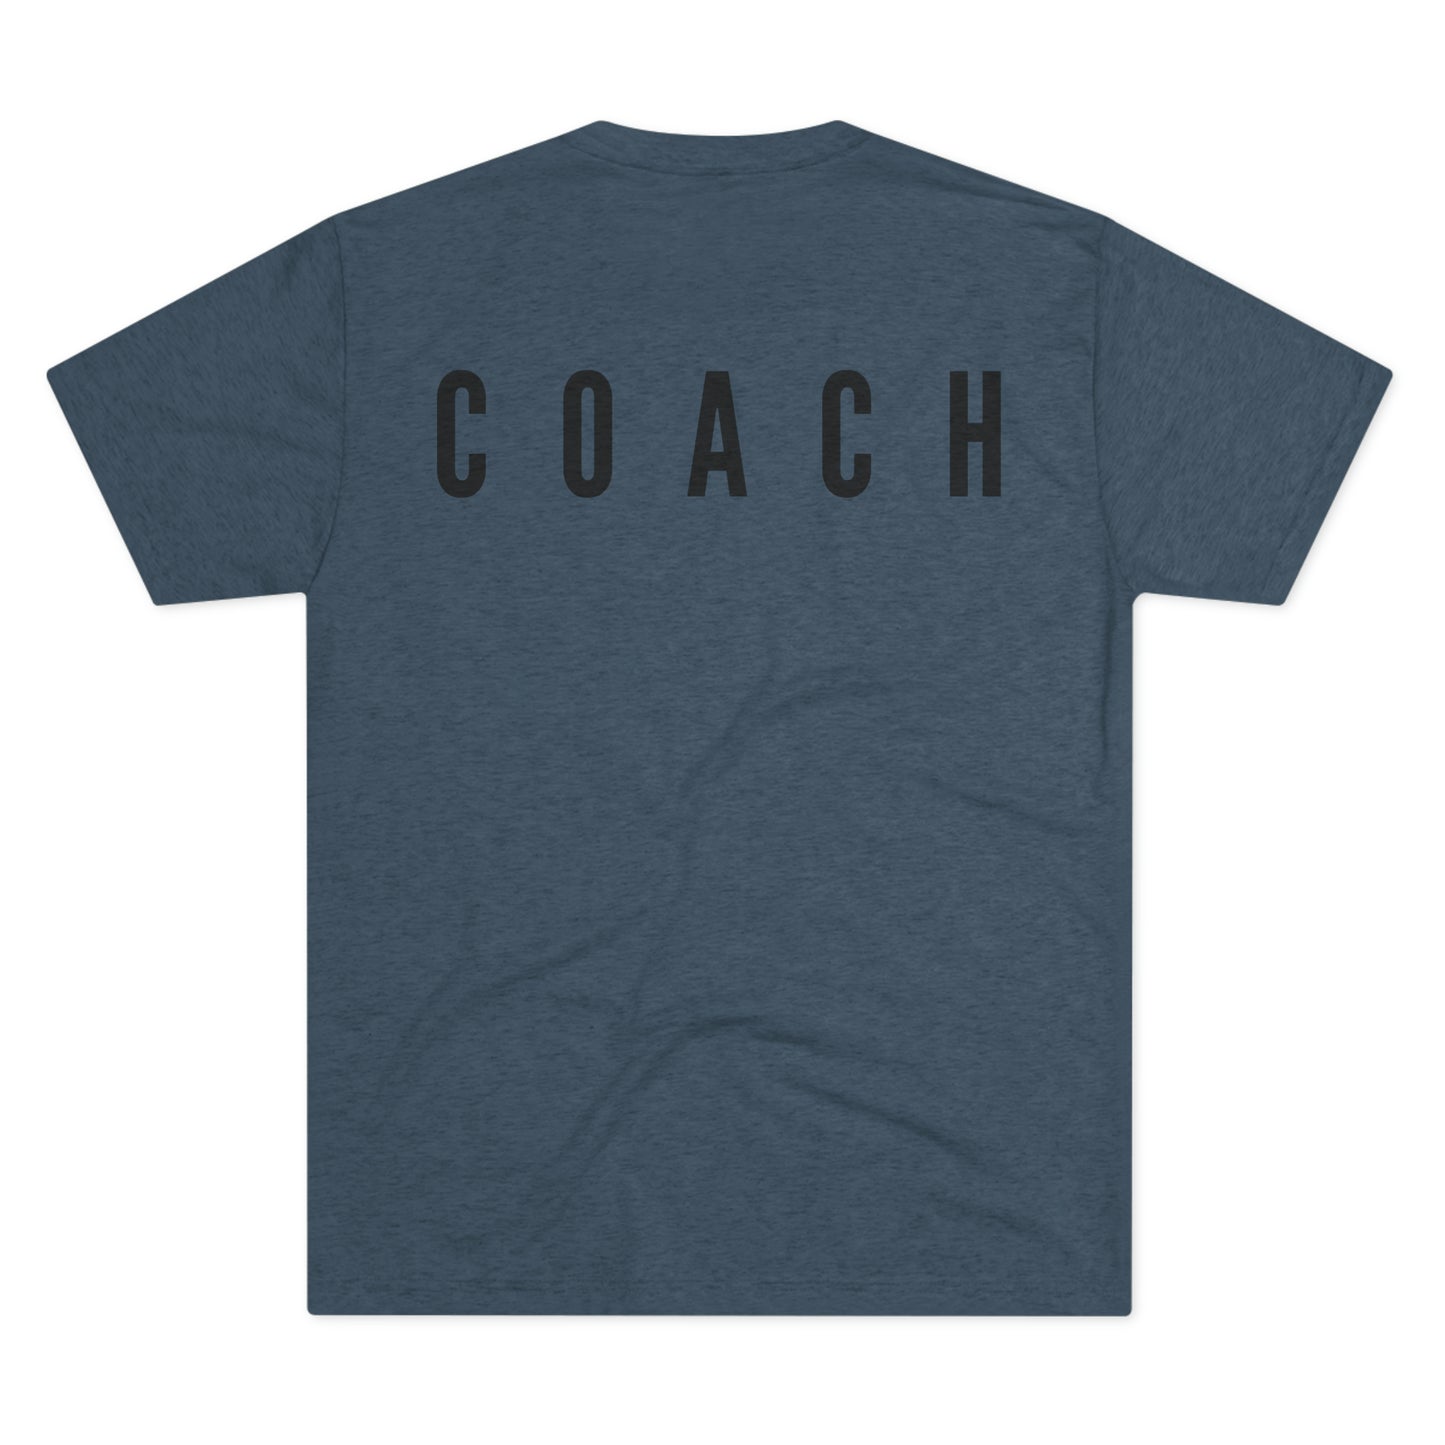 Coaches Values T